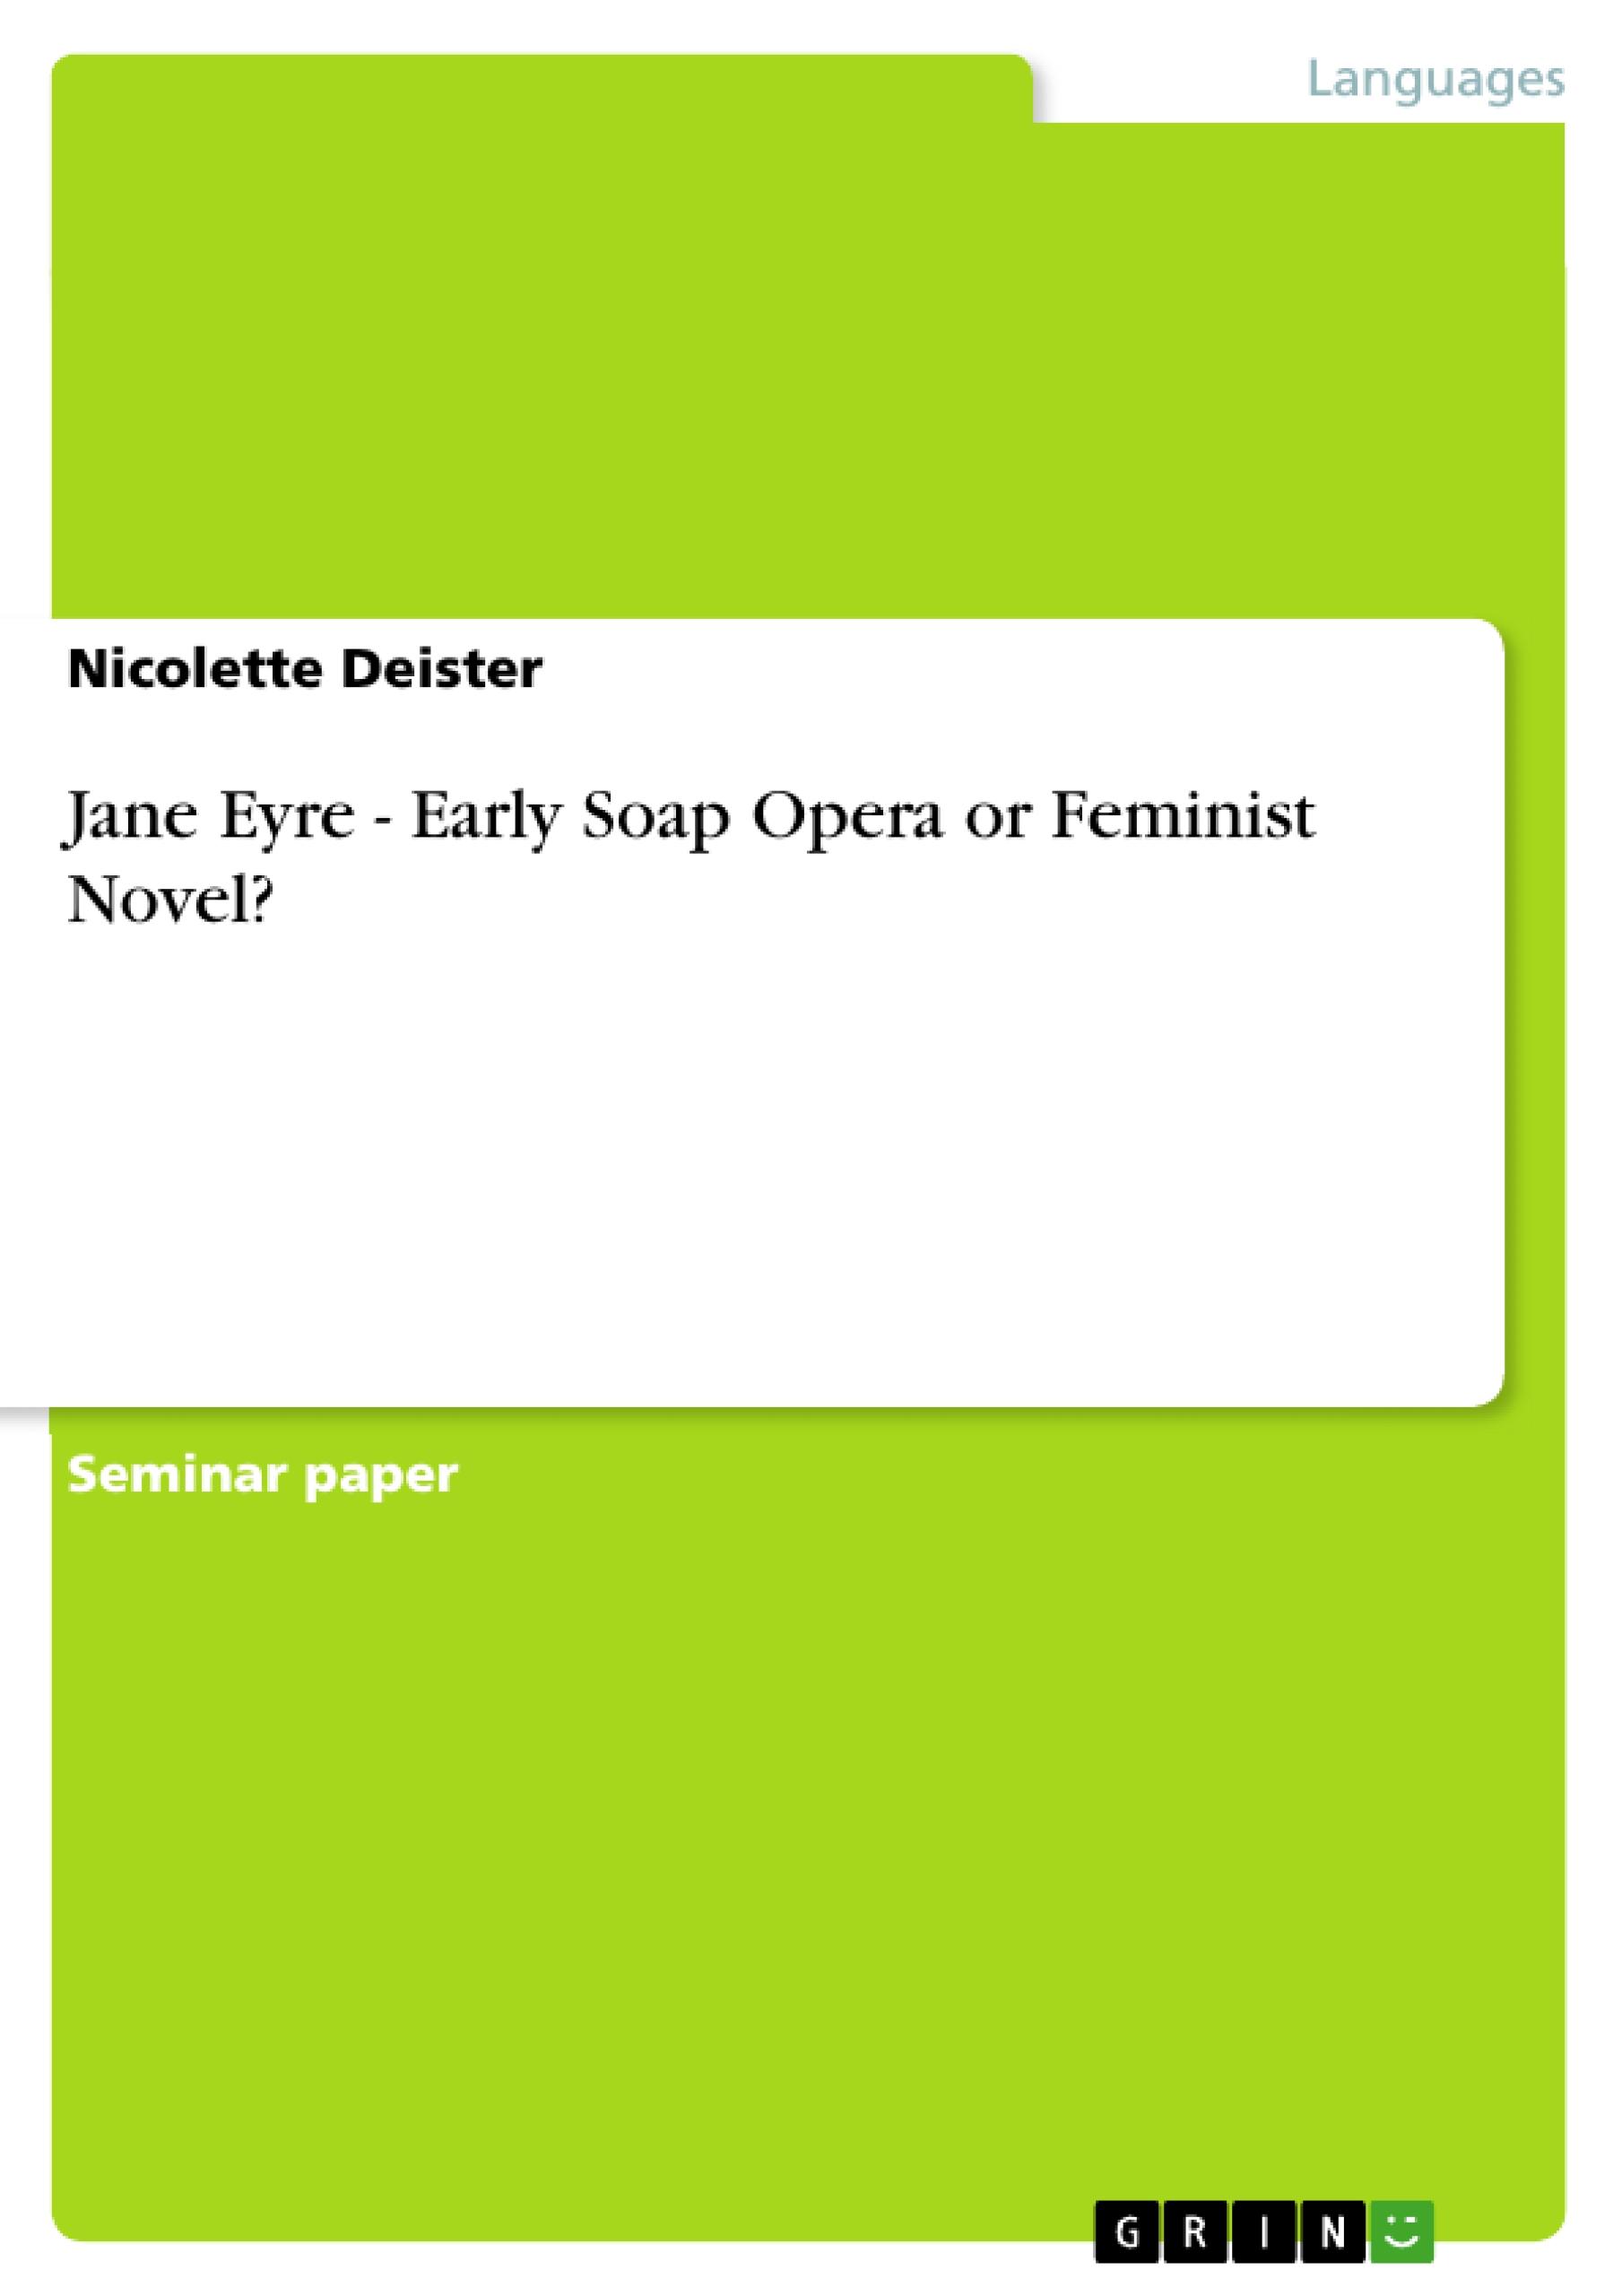 Jane Eyre - Early Soap Opera or Feminist Novel? - Deister, Nicolette